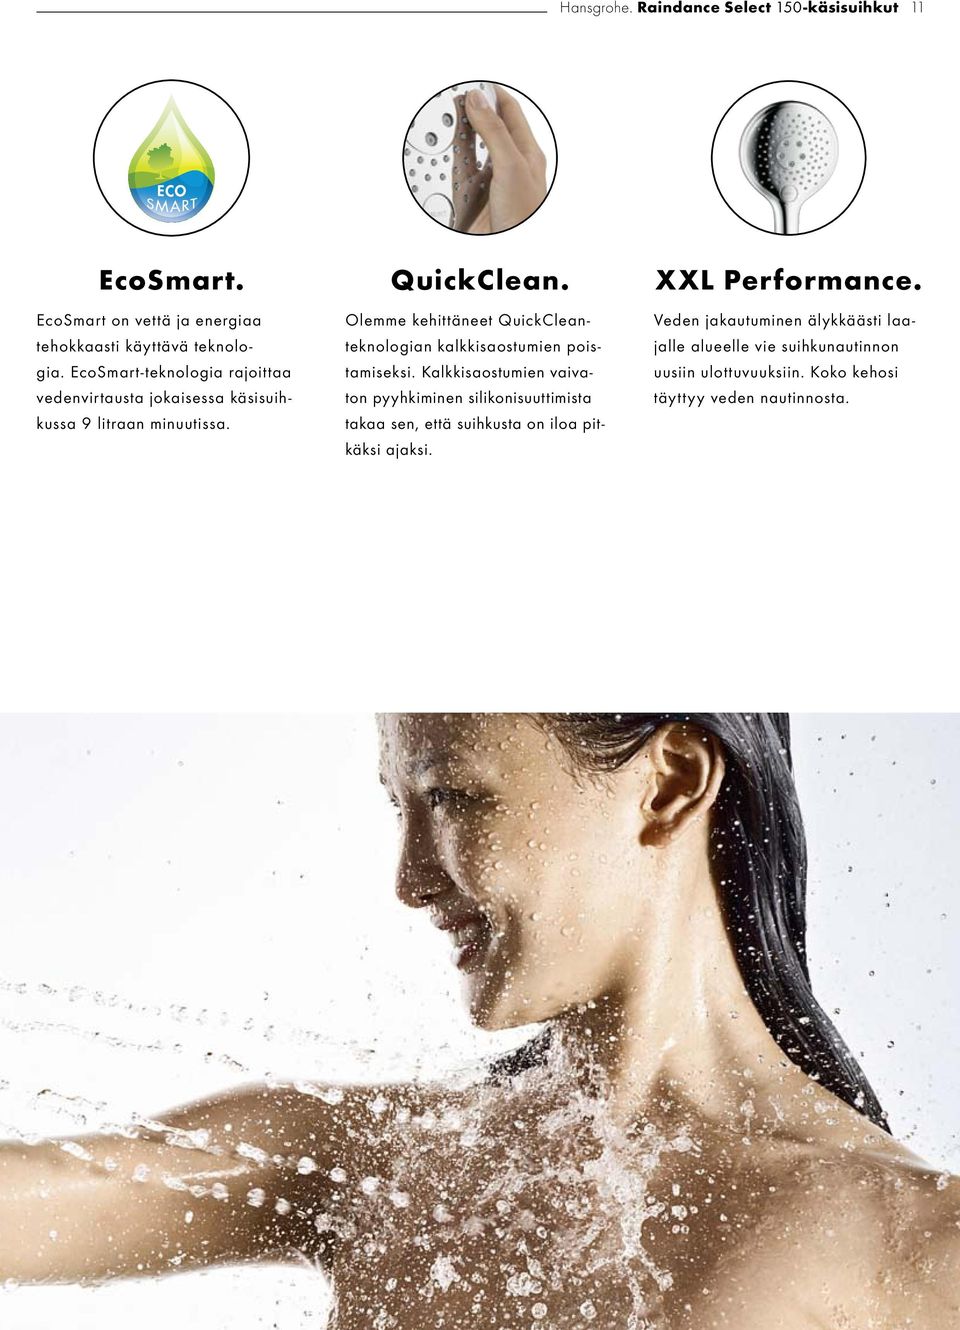 EcoSmart-teknologia rajoittaa vedenvirtausta jokaisessa käsisuihkussa 9 litraan minuutissa.